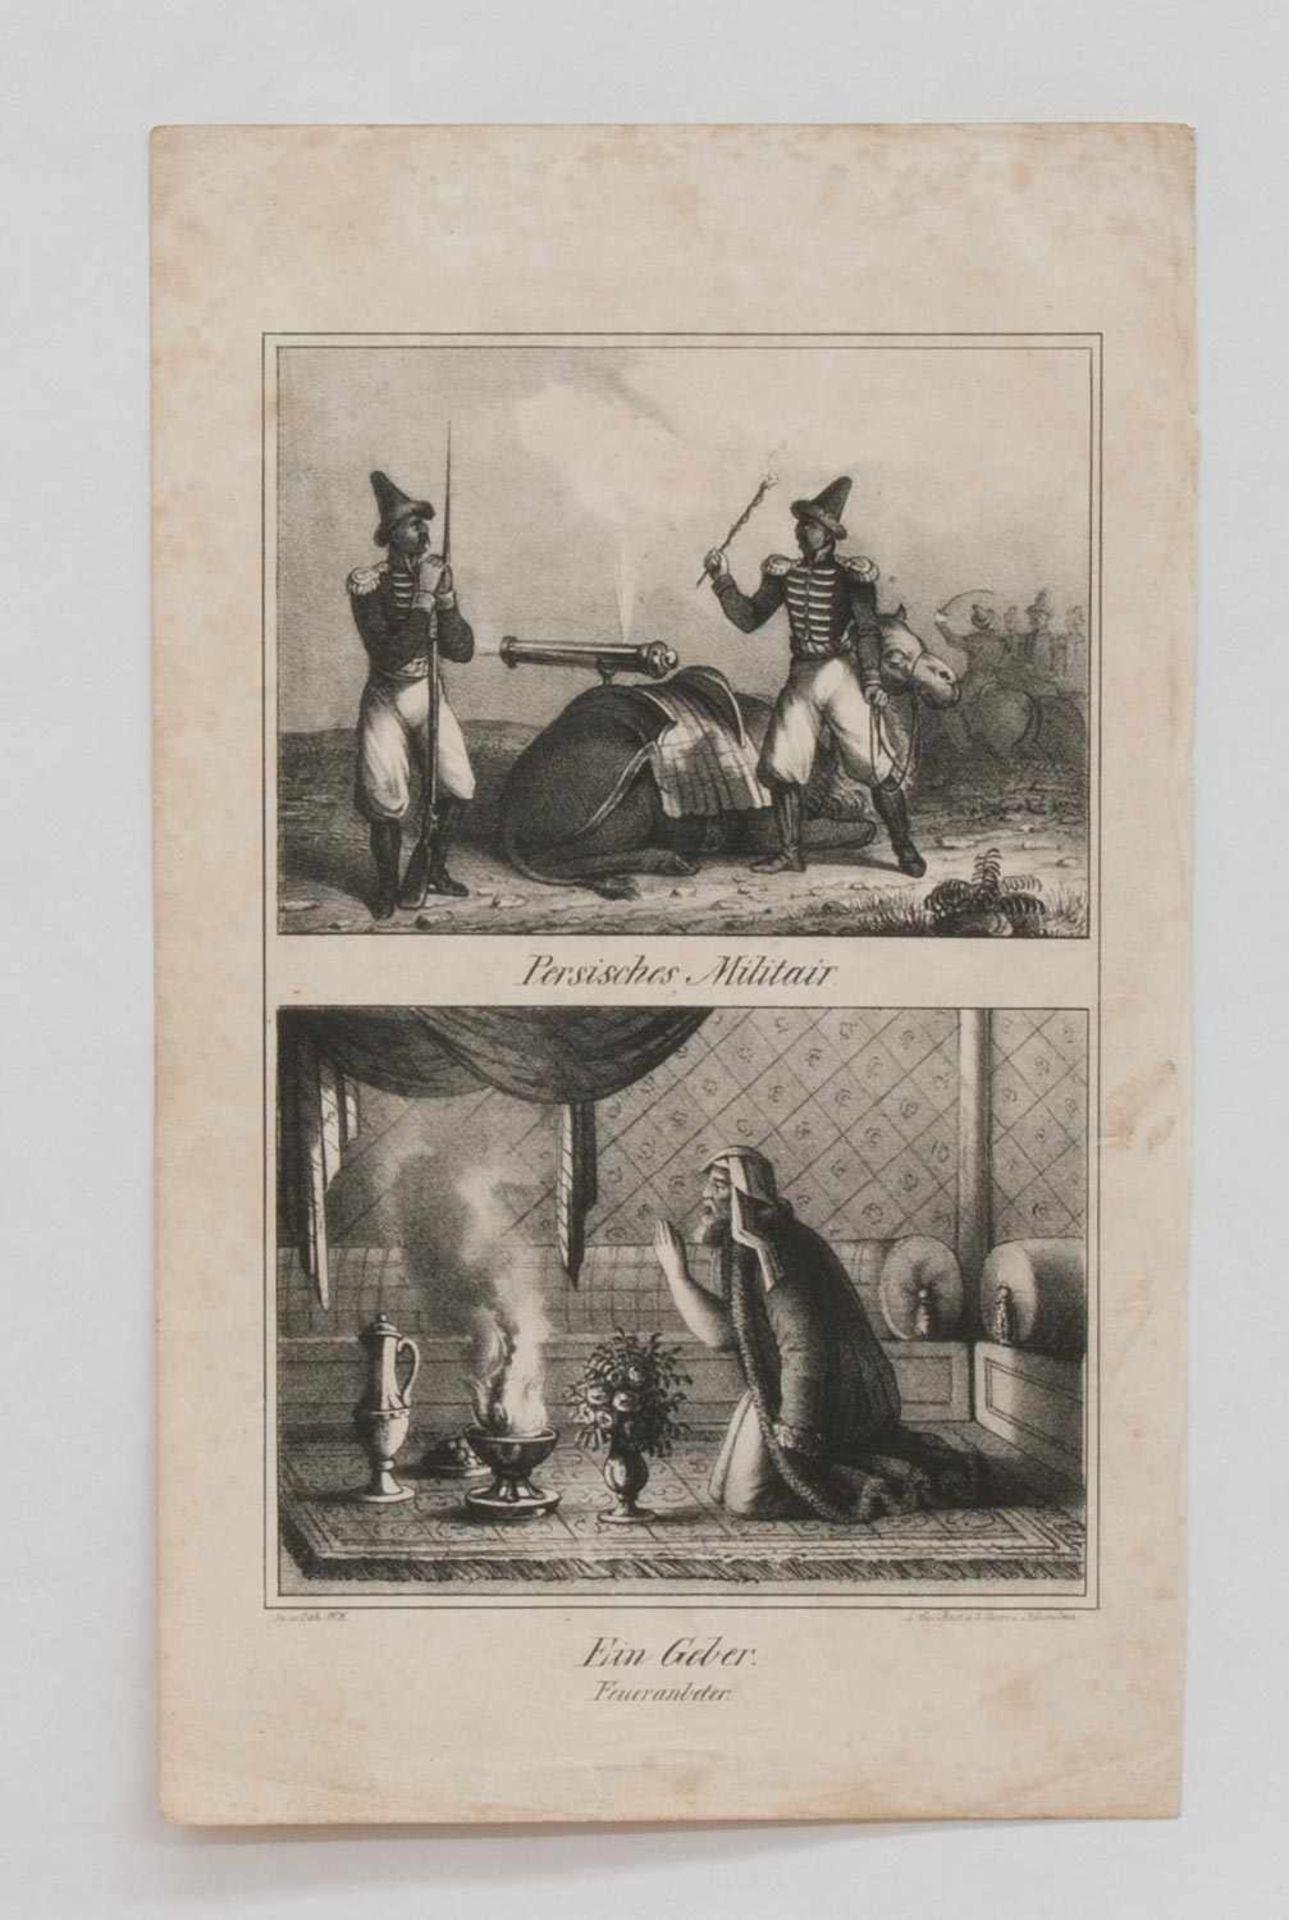 Stahlstich "Persisches Militair" - "Ein Geber-Feueranbeter" 2 Stahlstiche auf einem Blatt um 1850,